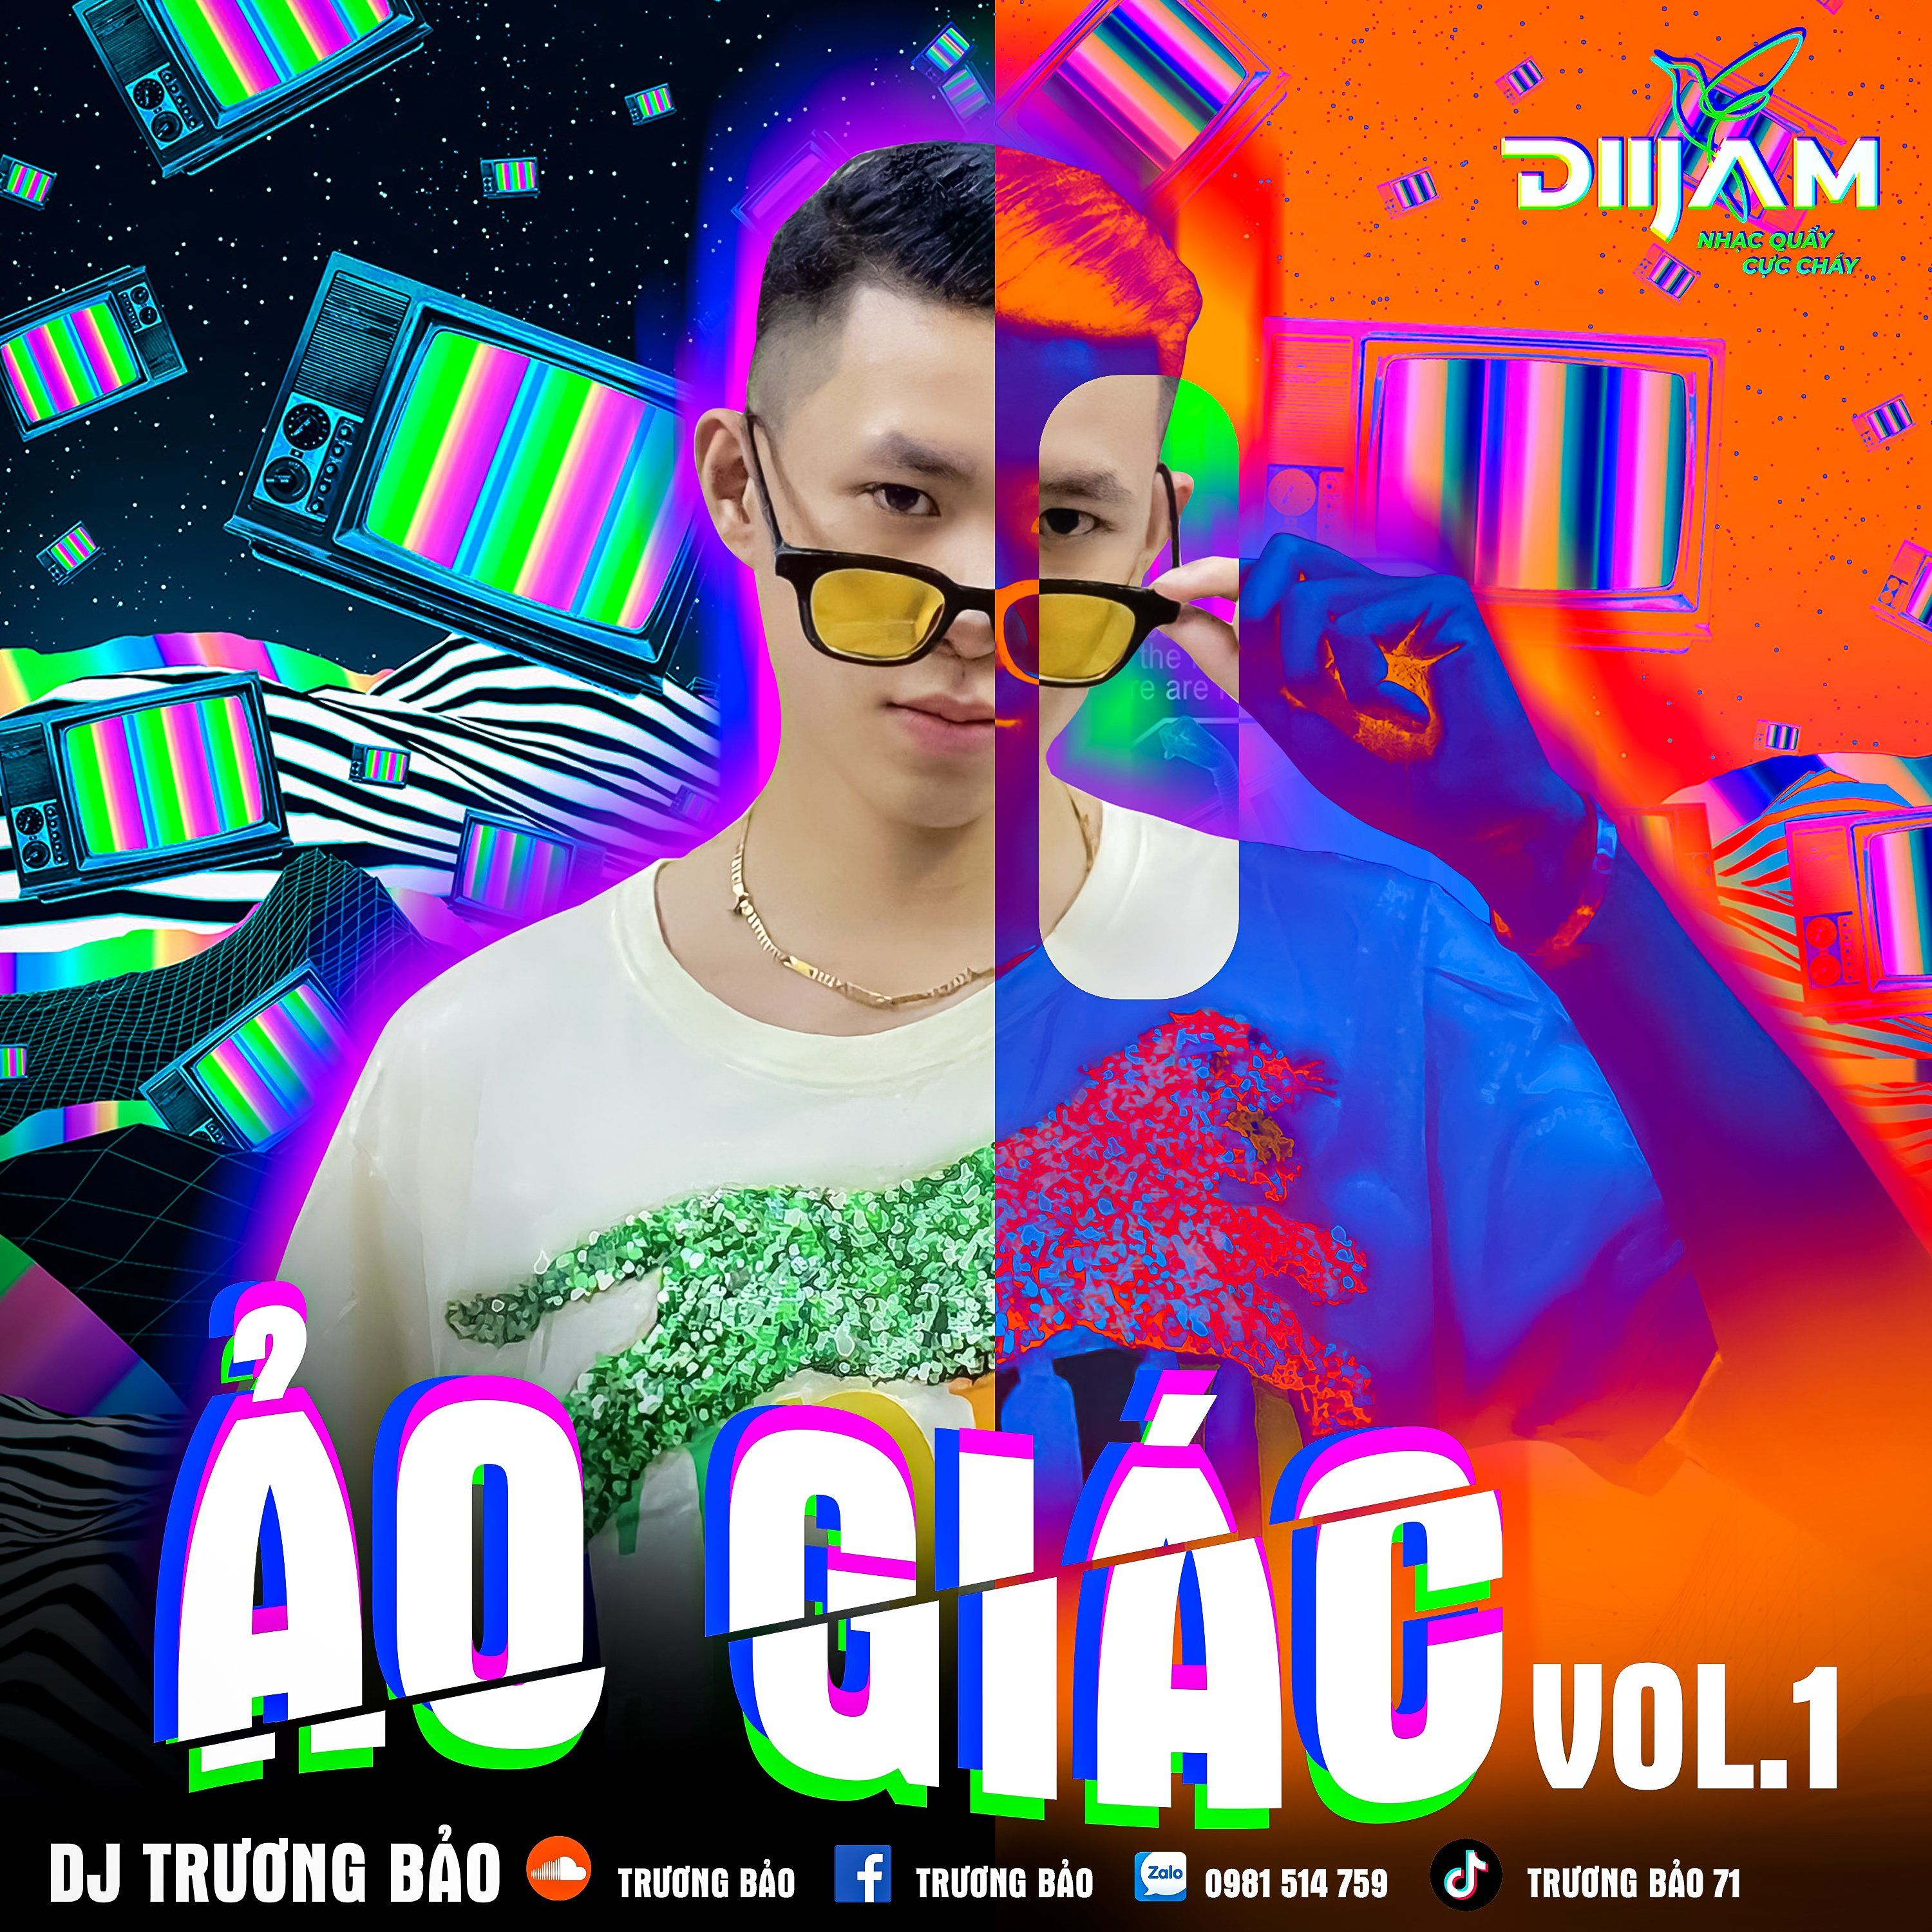 Luchdaich sìos Ảo Giác Vol 1 - DJ Trương Bảo (Nonstop Diijam)